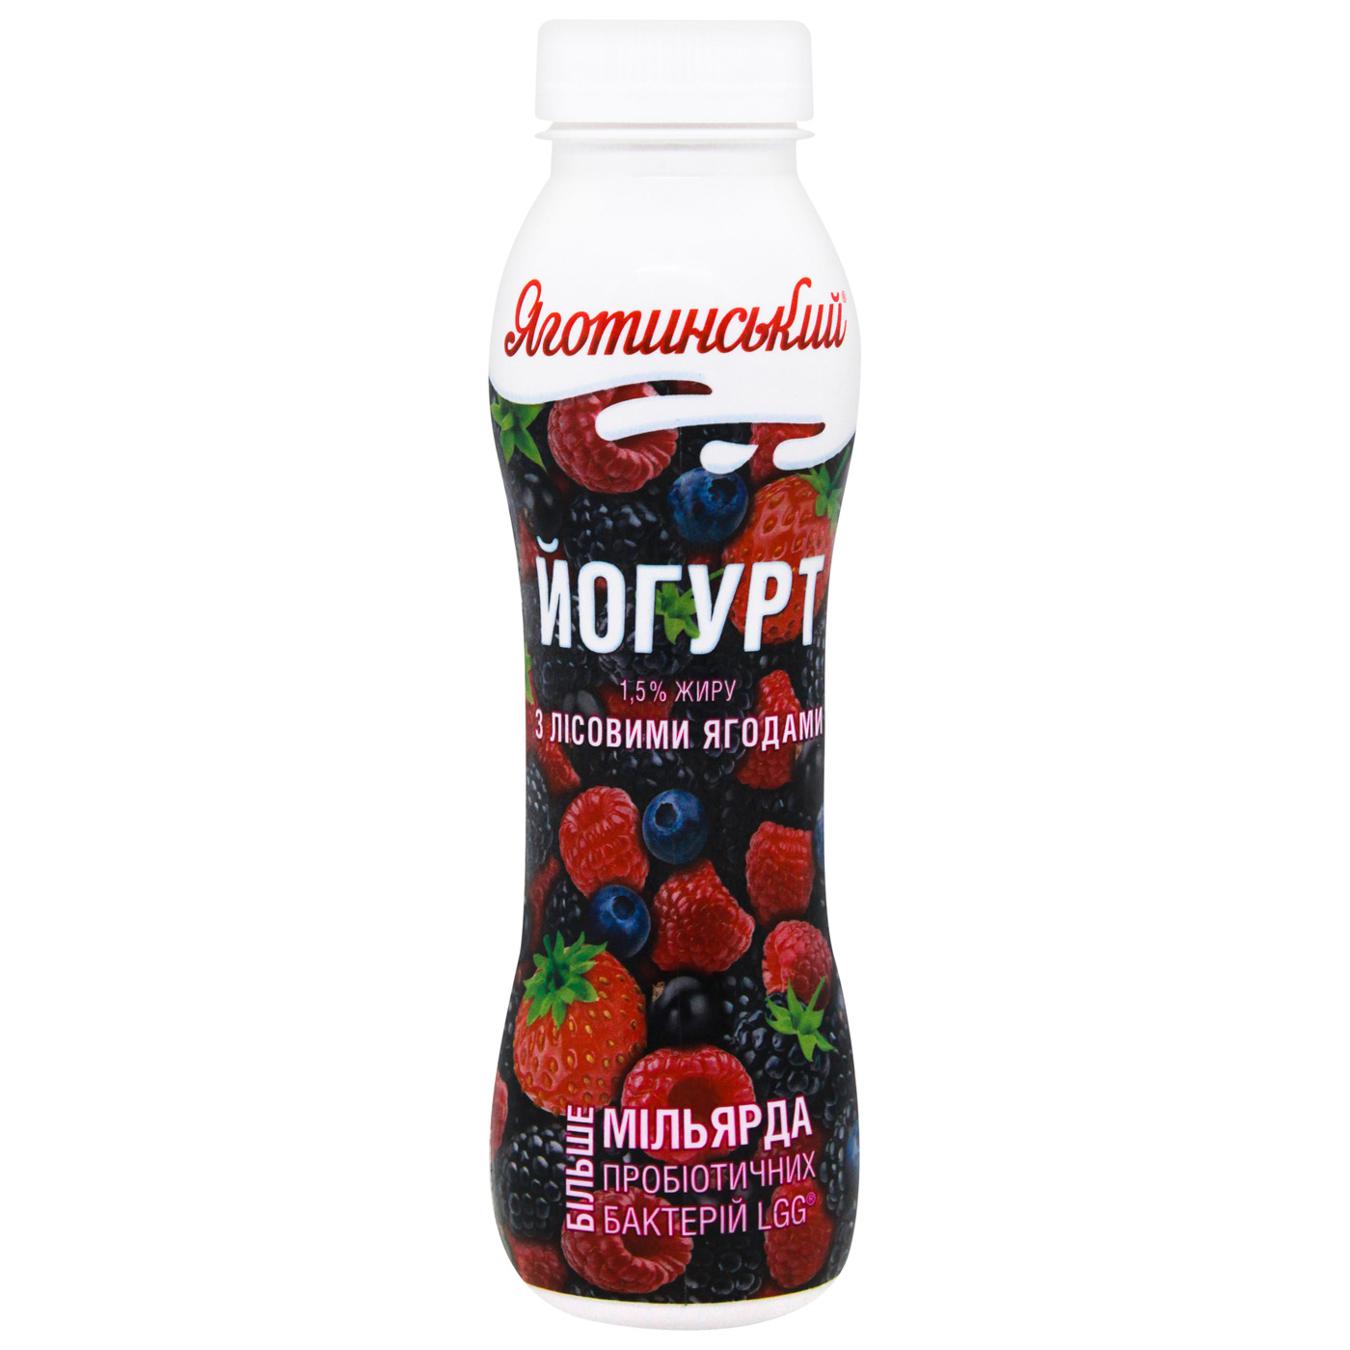 Yogurt Yagotynske 1.5% berry forest 270g